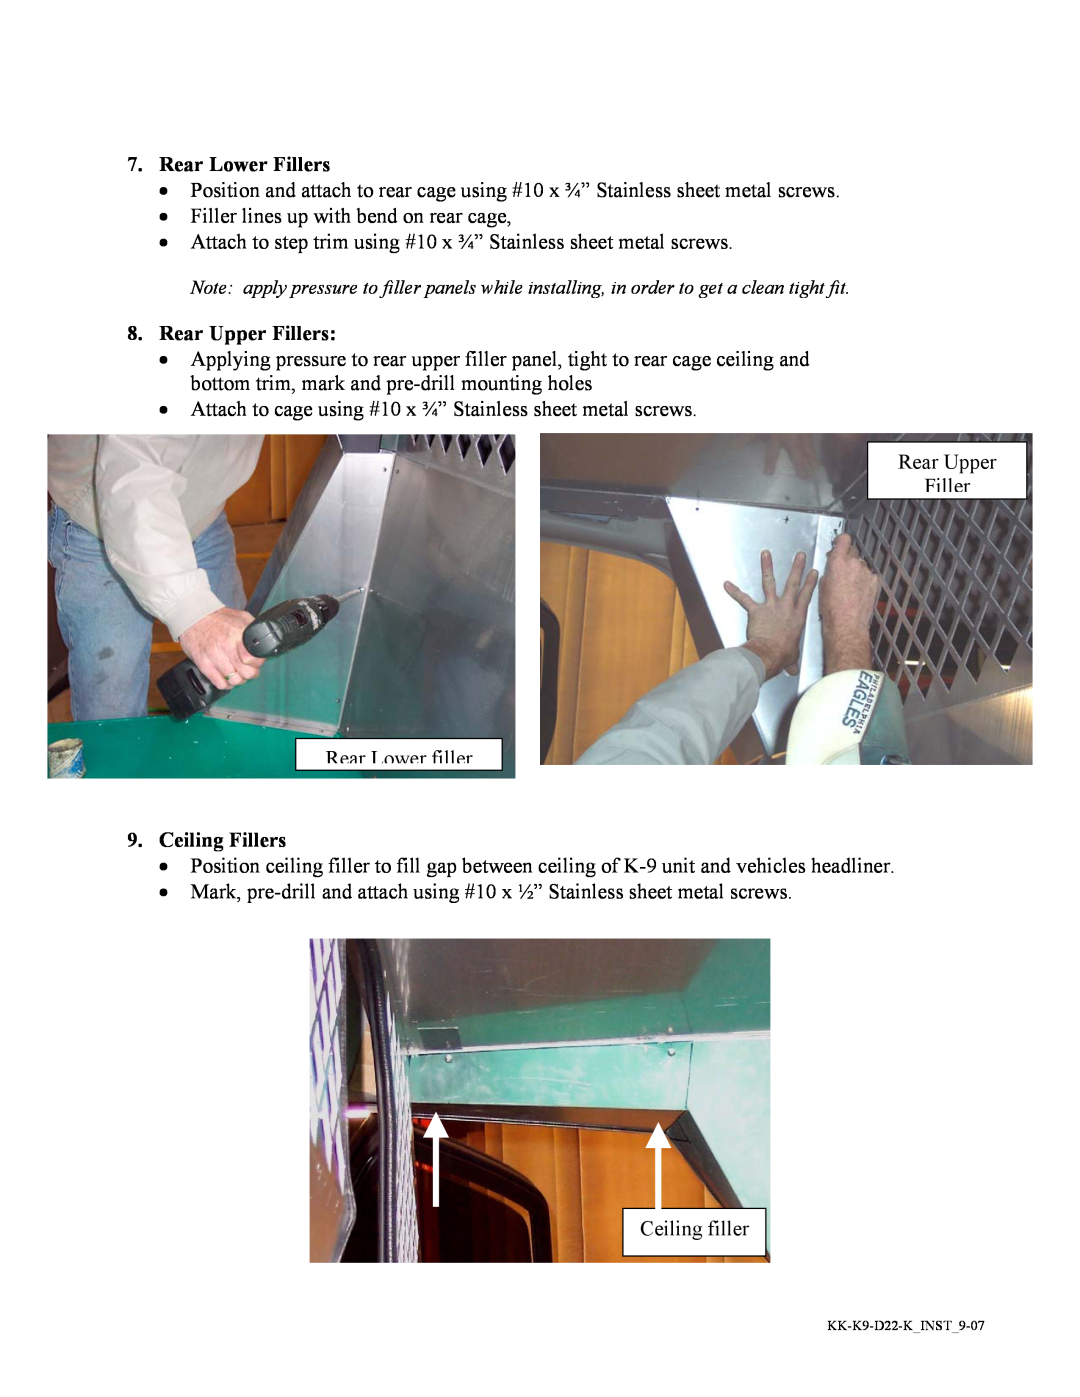 Havis-Shields KK-K9-D22-K installation instructions Rear Lower Fillers, Rear Upper Fillers, Ceiling Fillers 